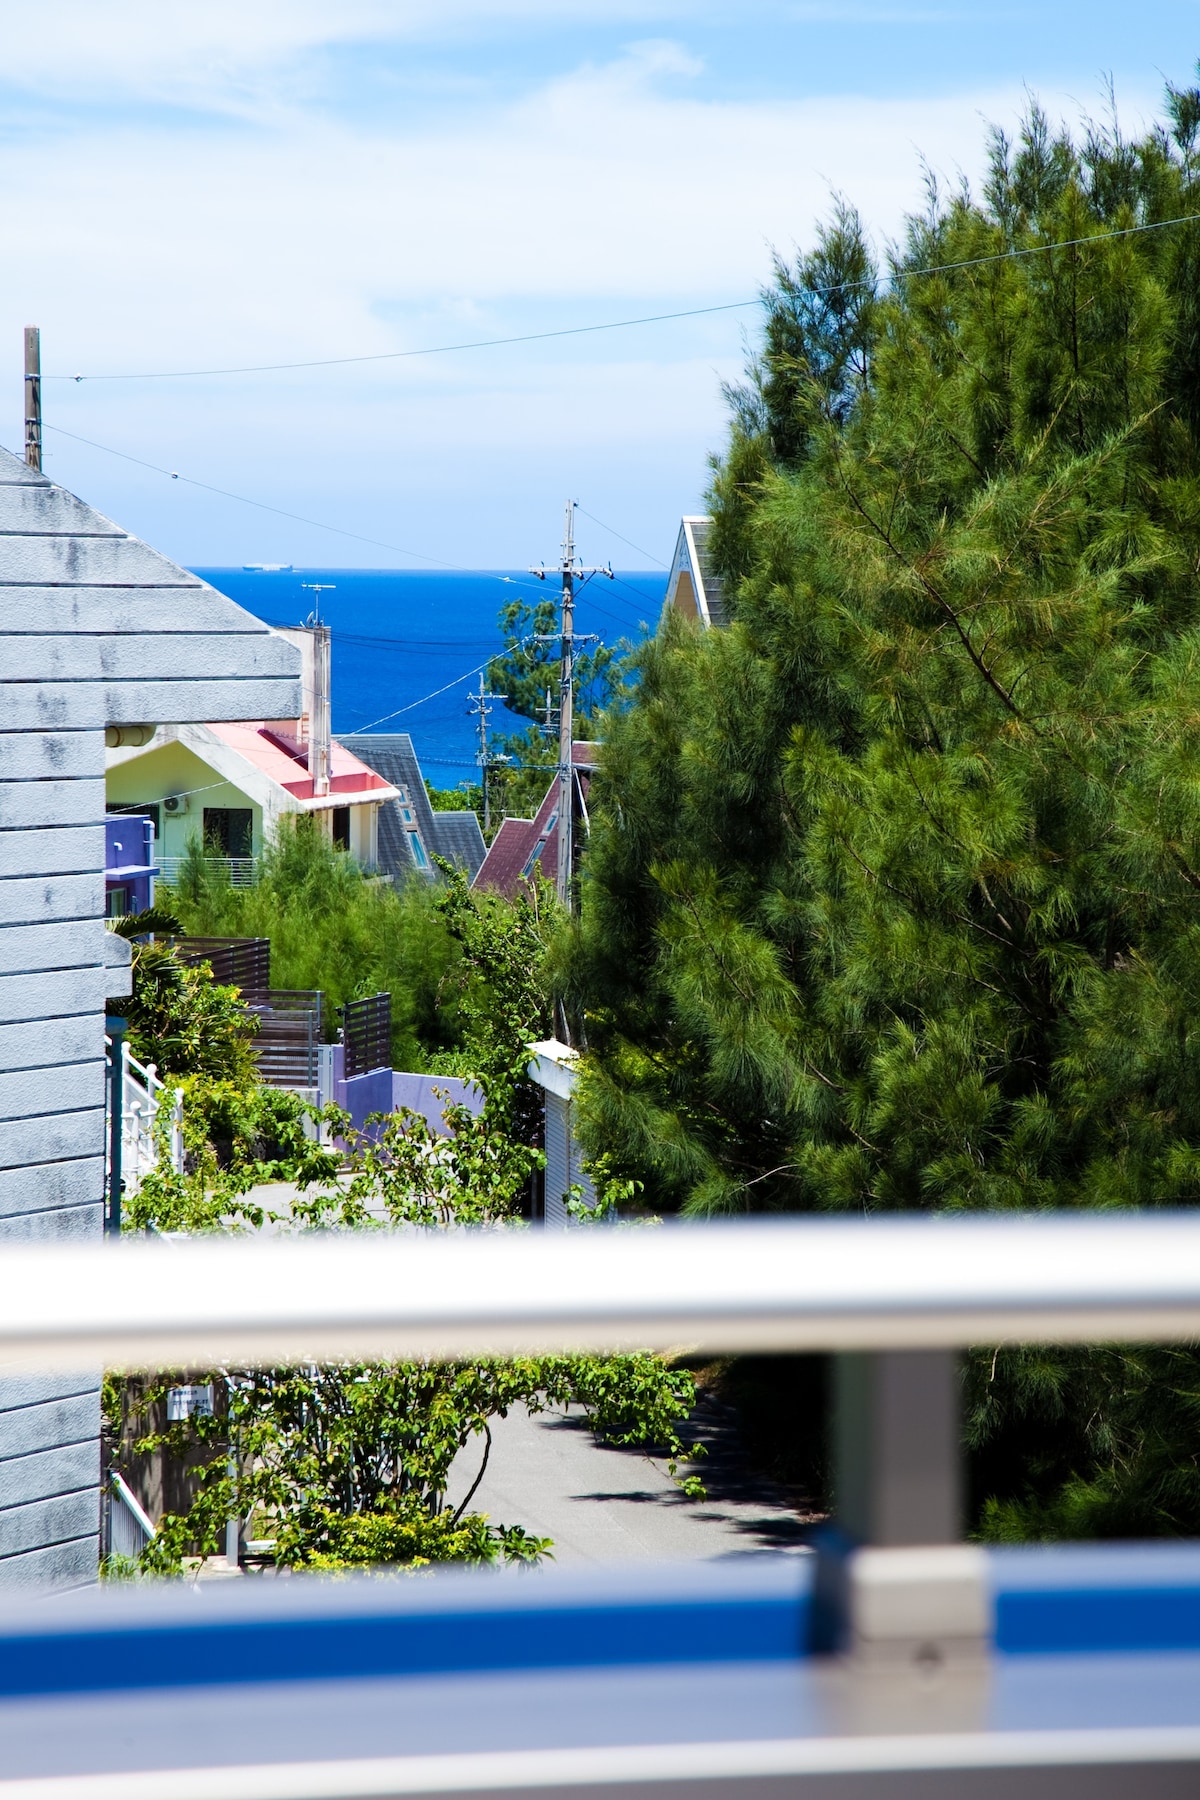 設游泳池！山形琉球旅籠恩納村 - 集結藝術作品的沖繩別墅